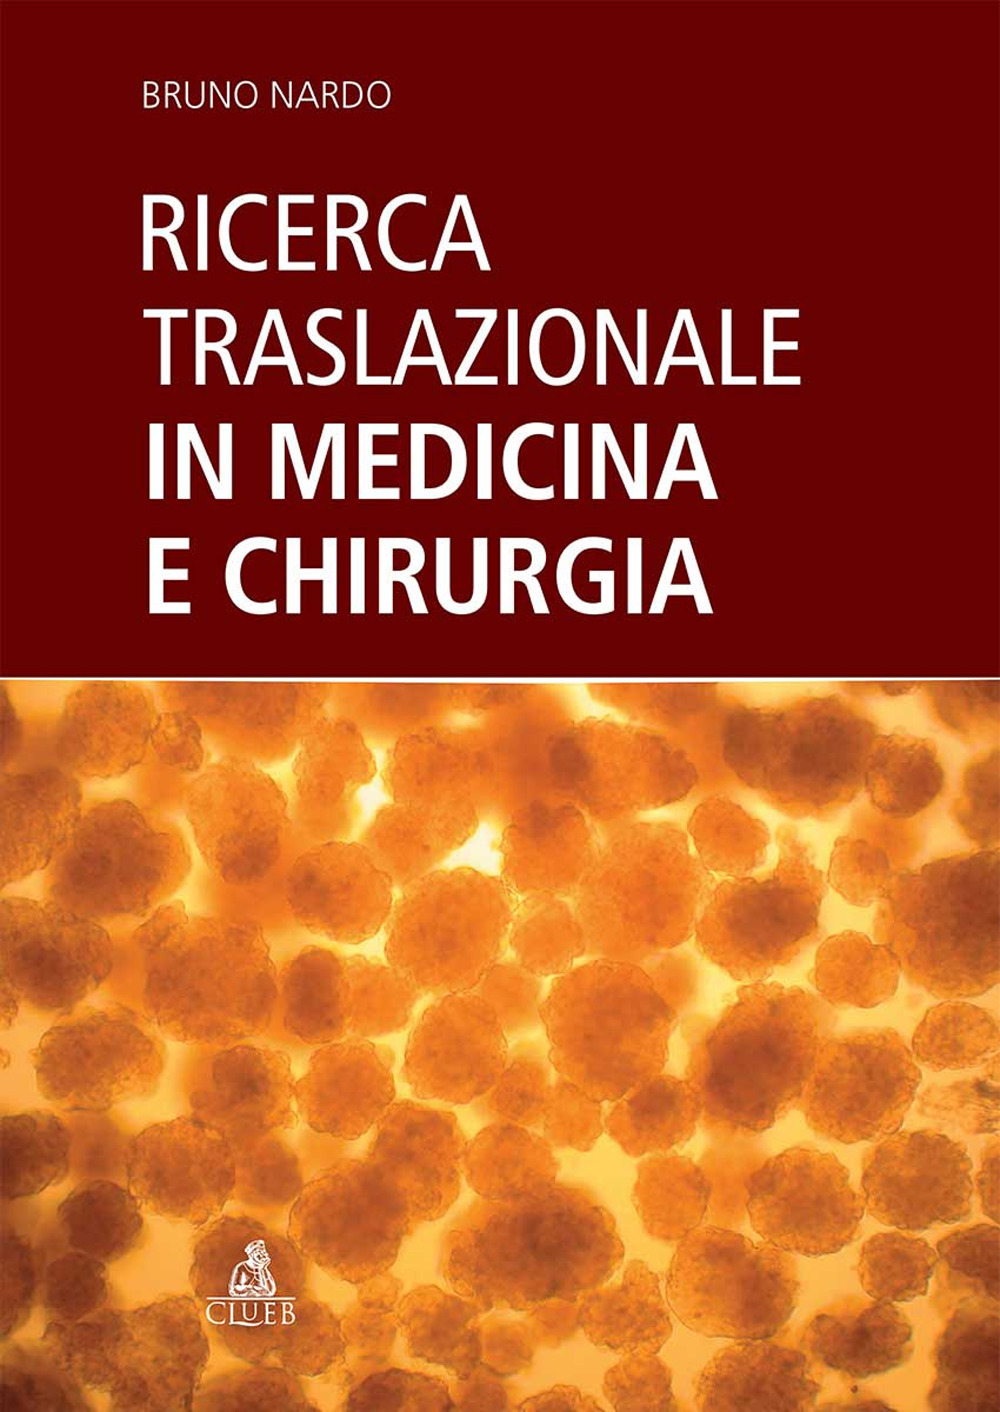 Libri Bruno Nardo - Ricerca Traslazionale In Medicina E Chirurgia NUOVO SIGILLATO SUBITO DISPONIBILE